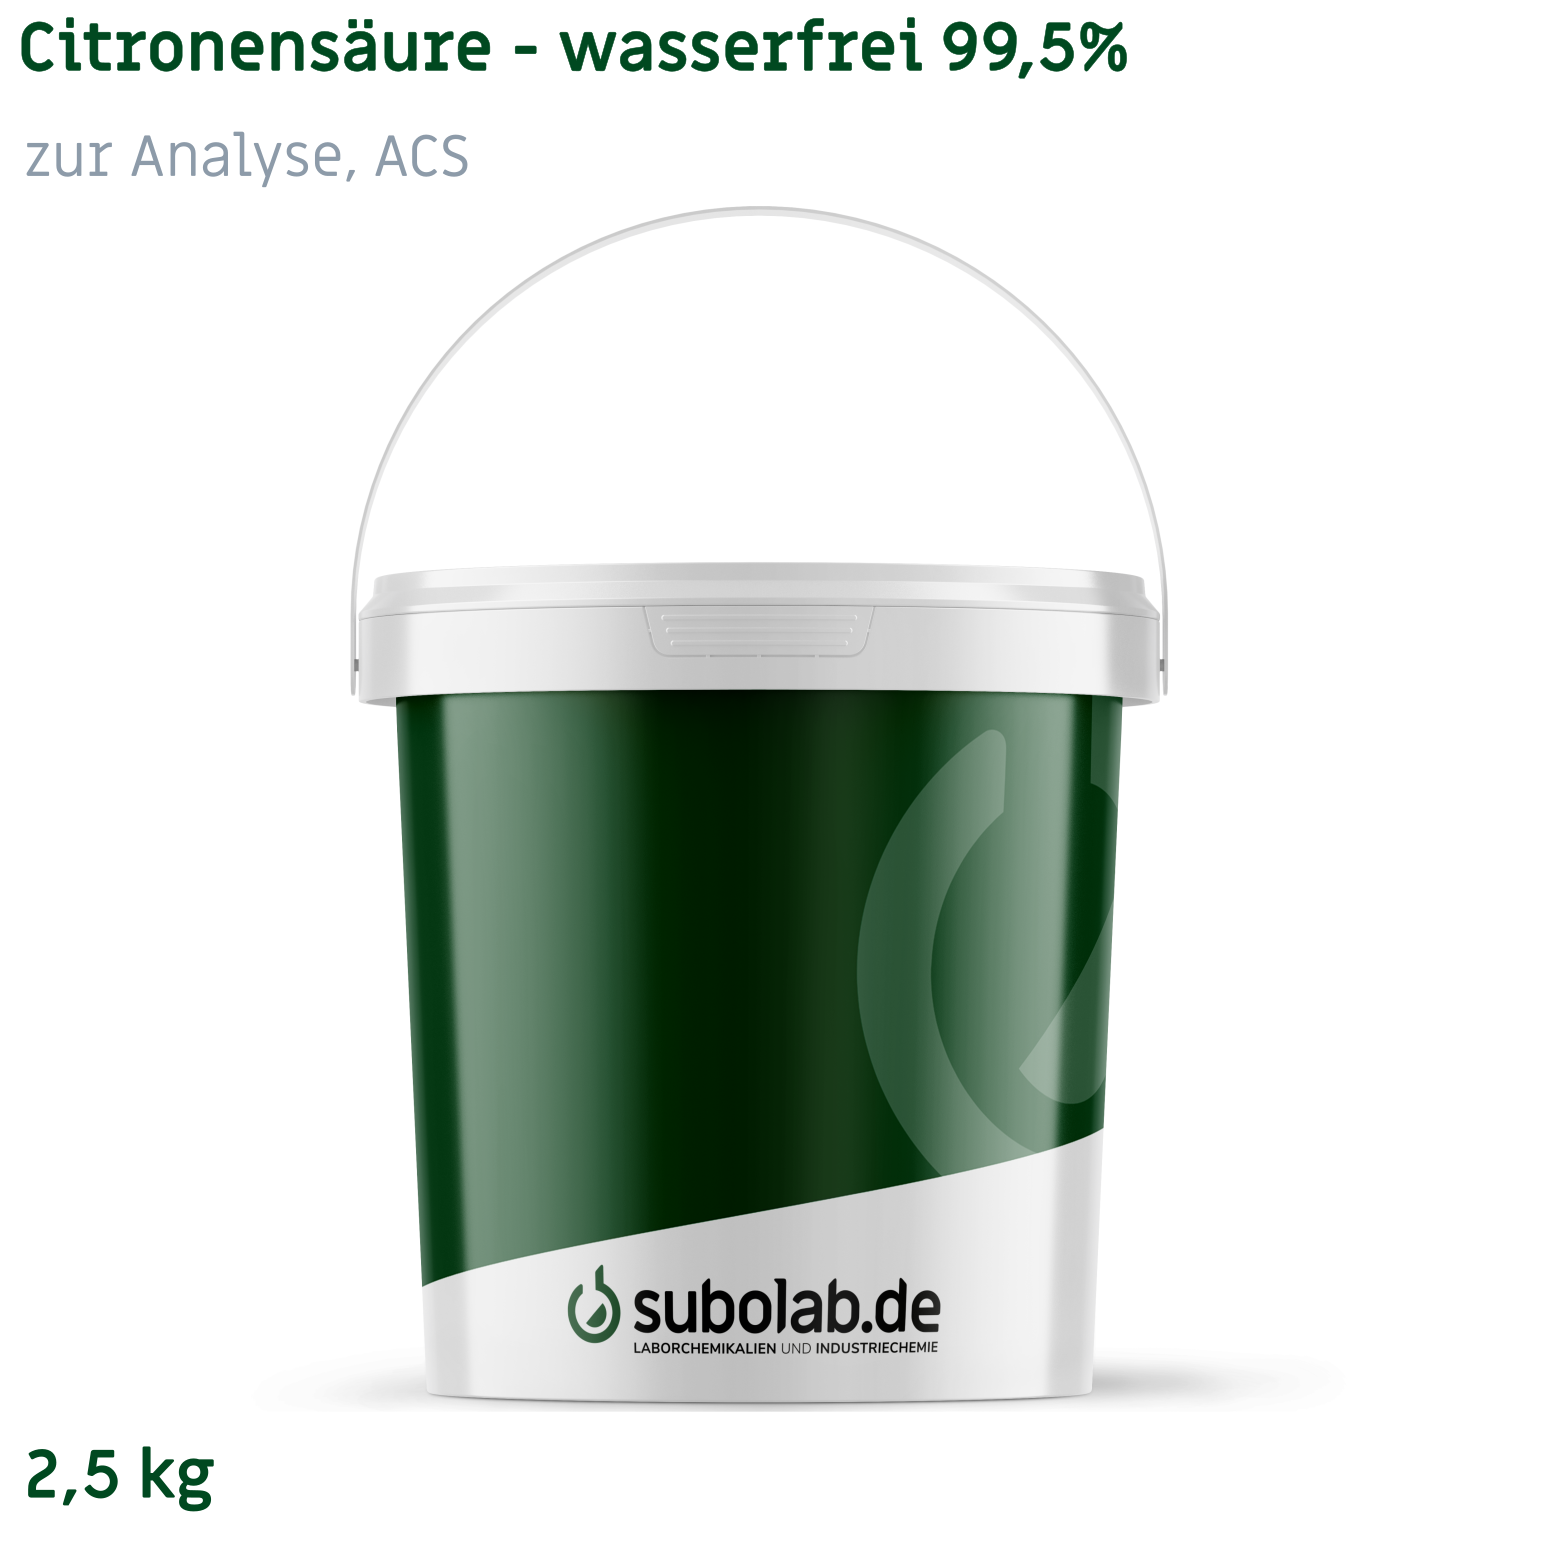 Bild von Citronensäure - wasserfrei 99,5% zur Analyse, ACS (2,5 kg)